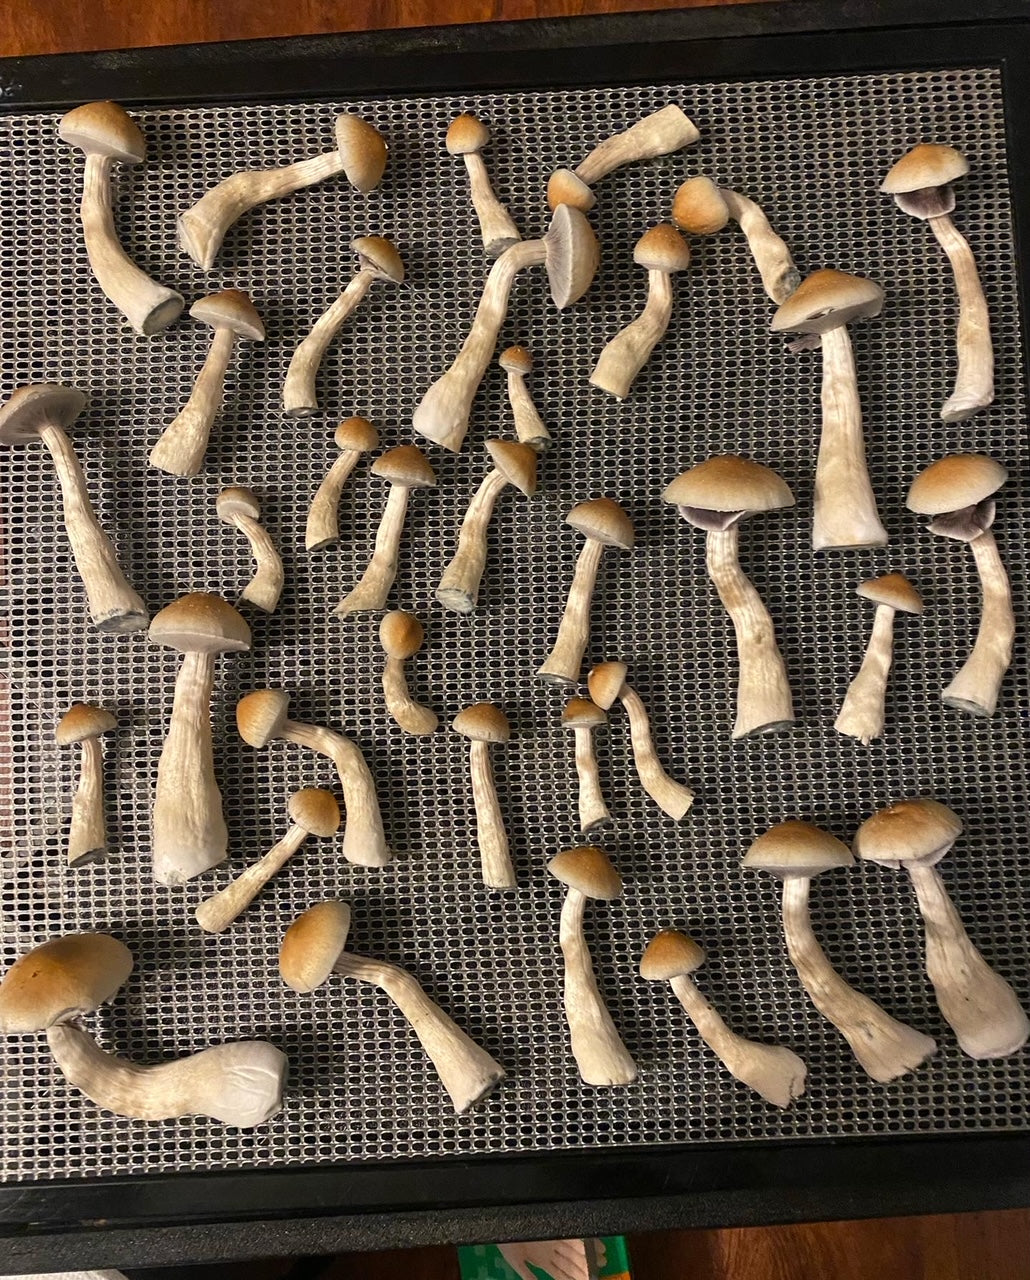 Mushroom Mono Tub Grow Along Kit